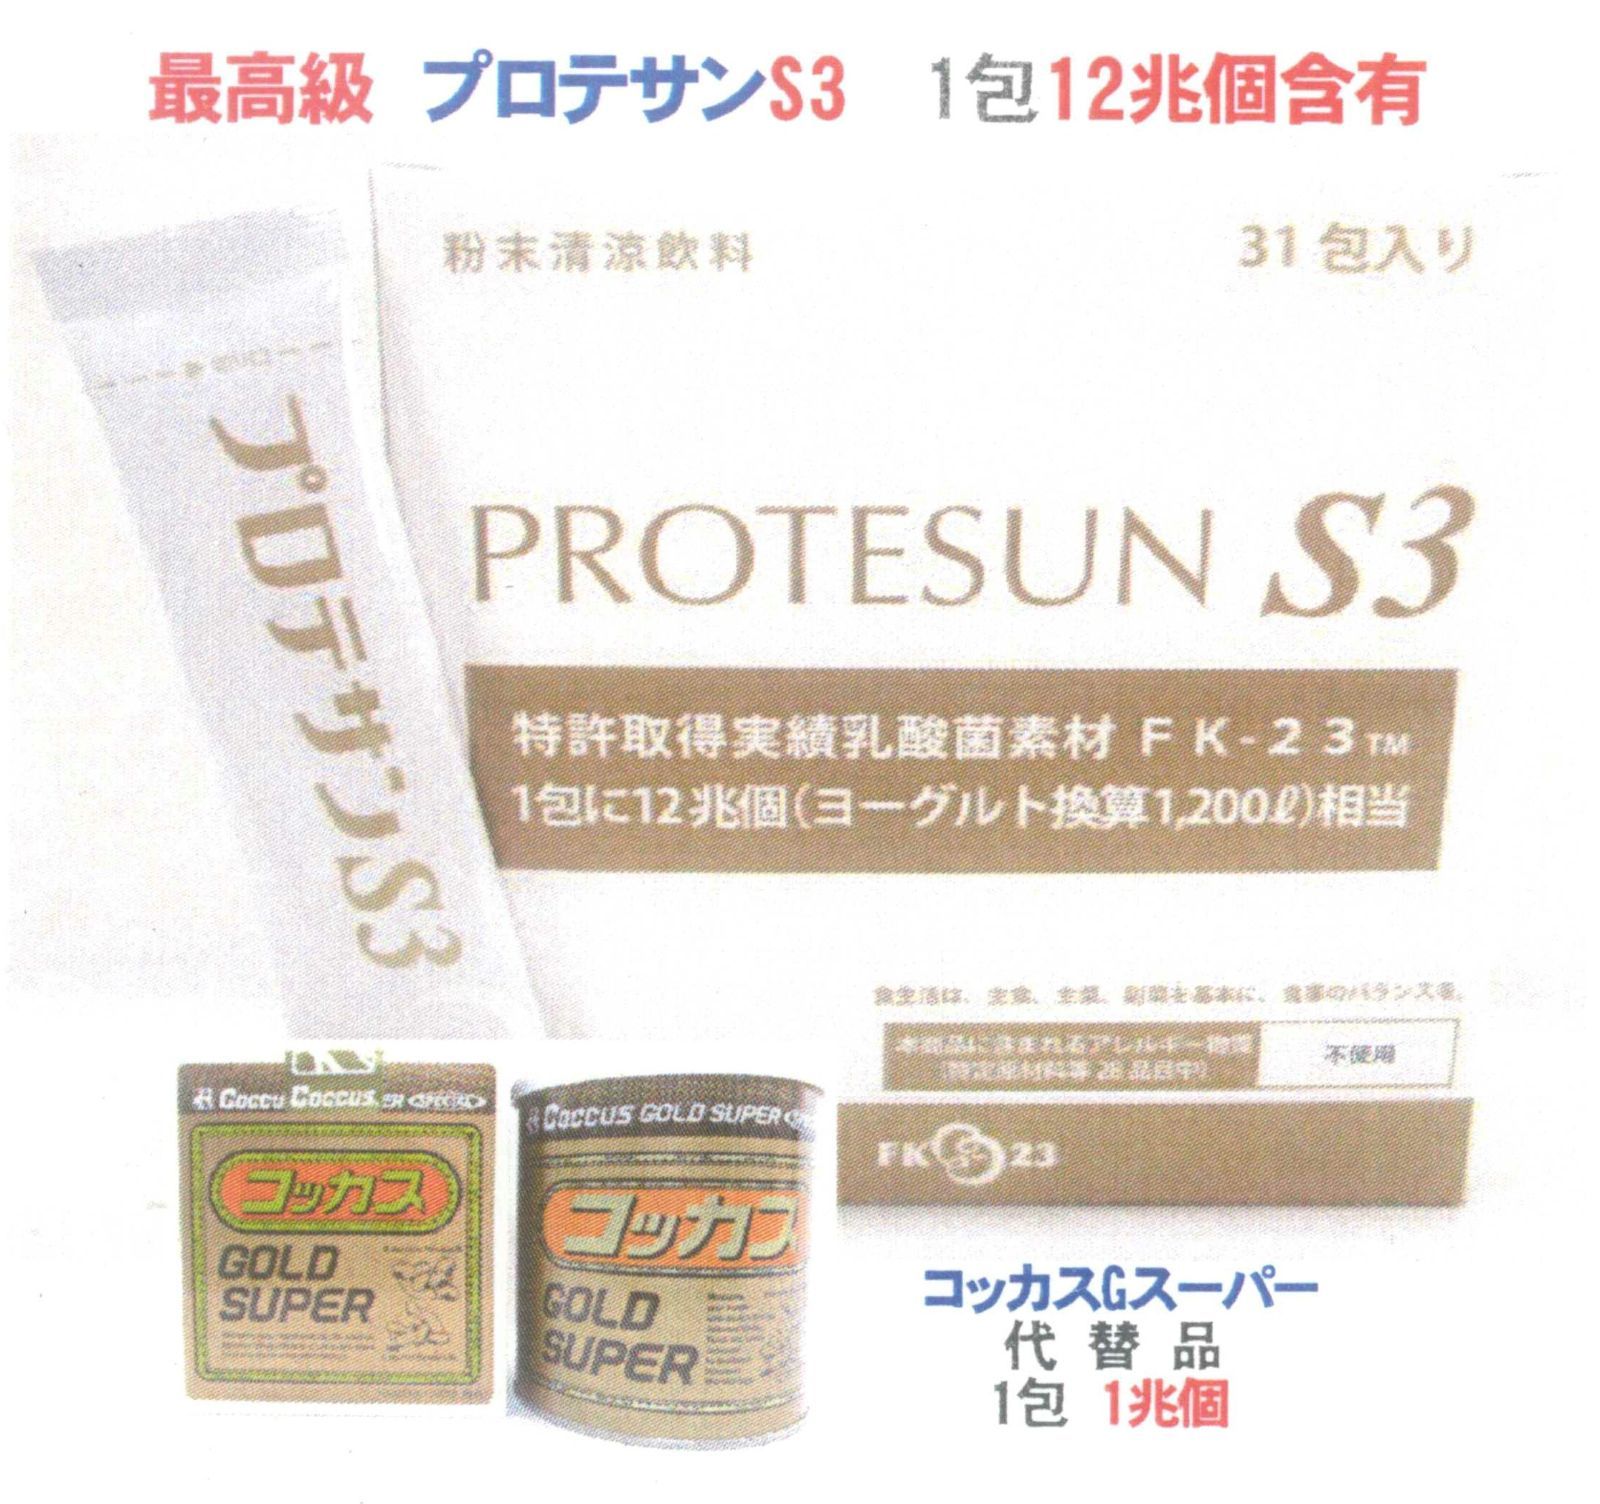 プロテサンS3(31包入)x1箱、ニチニチ製薬・ヒト由来コッカス菌1包12兆個